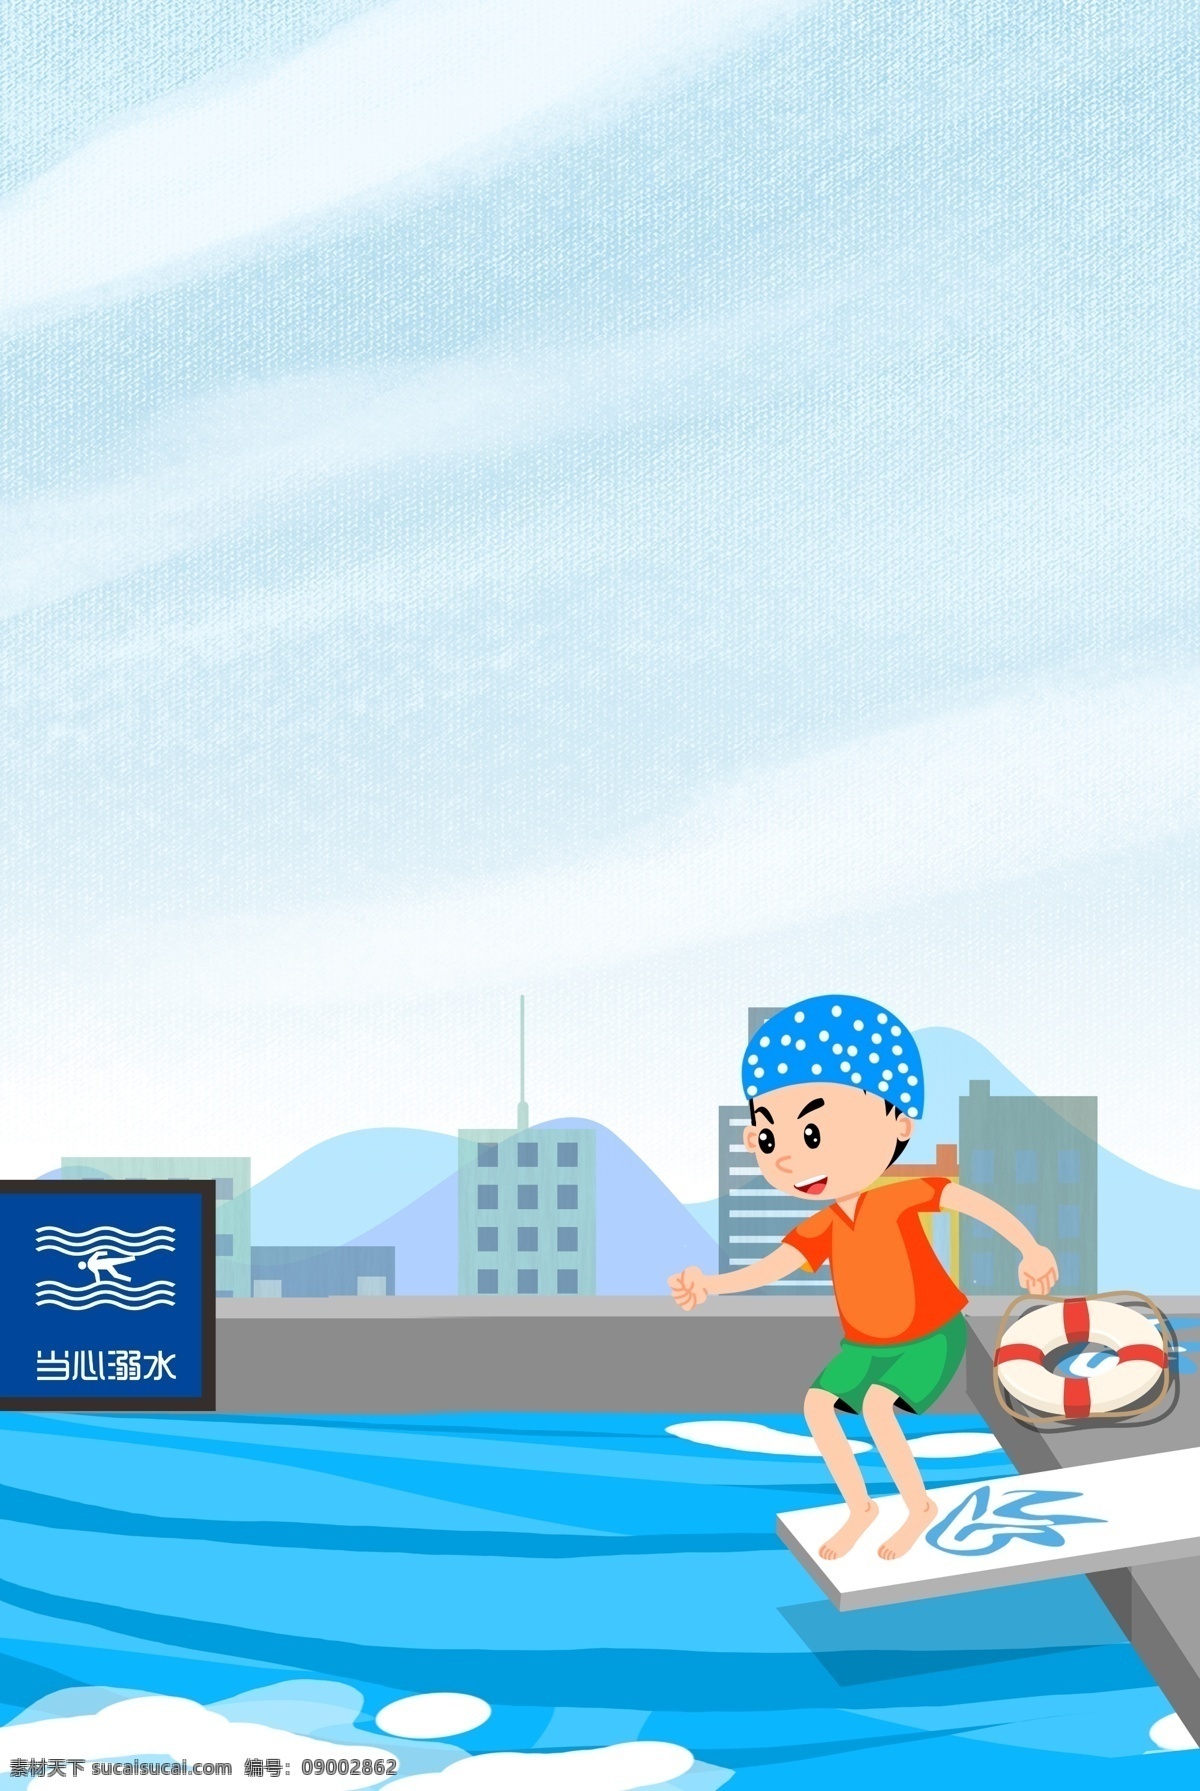 创意 简约 卡通 夏季 防 溺水 合成 背景 夏天 安全宣传 预防溺水 游泳 救生圈 安全意识 儿童 泳池 指示牌